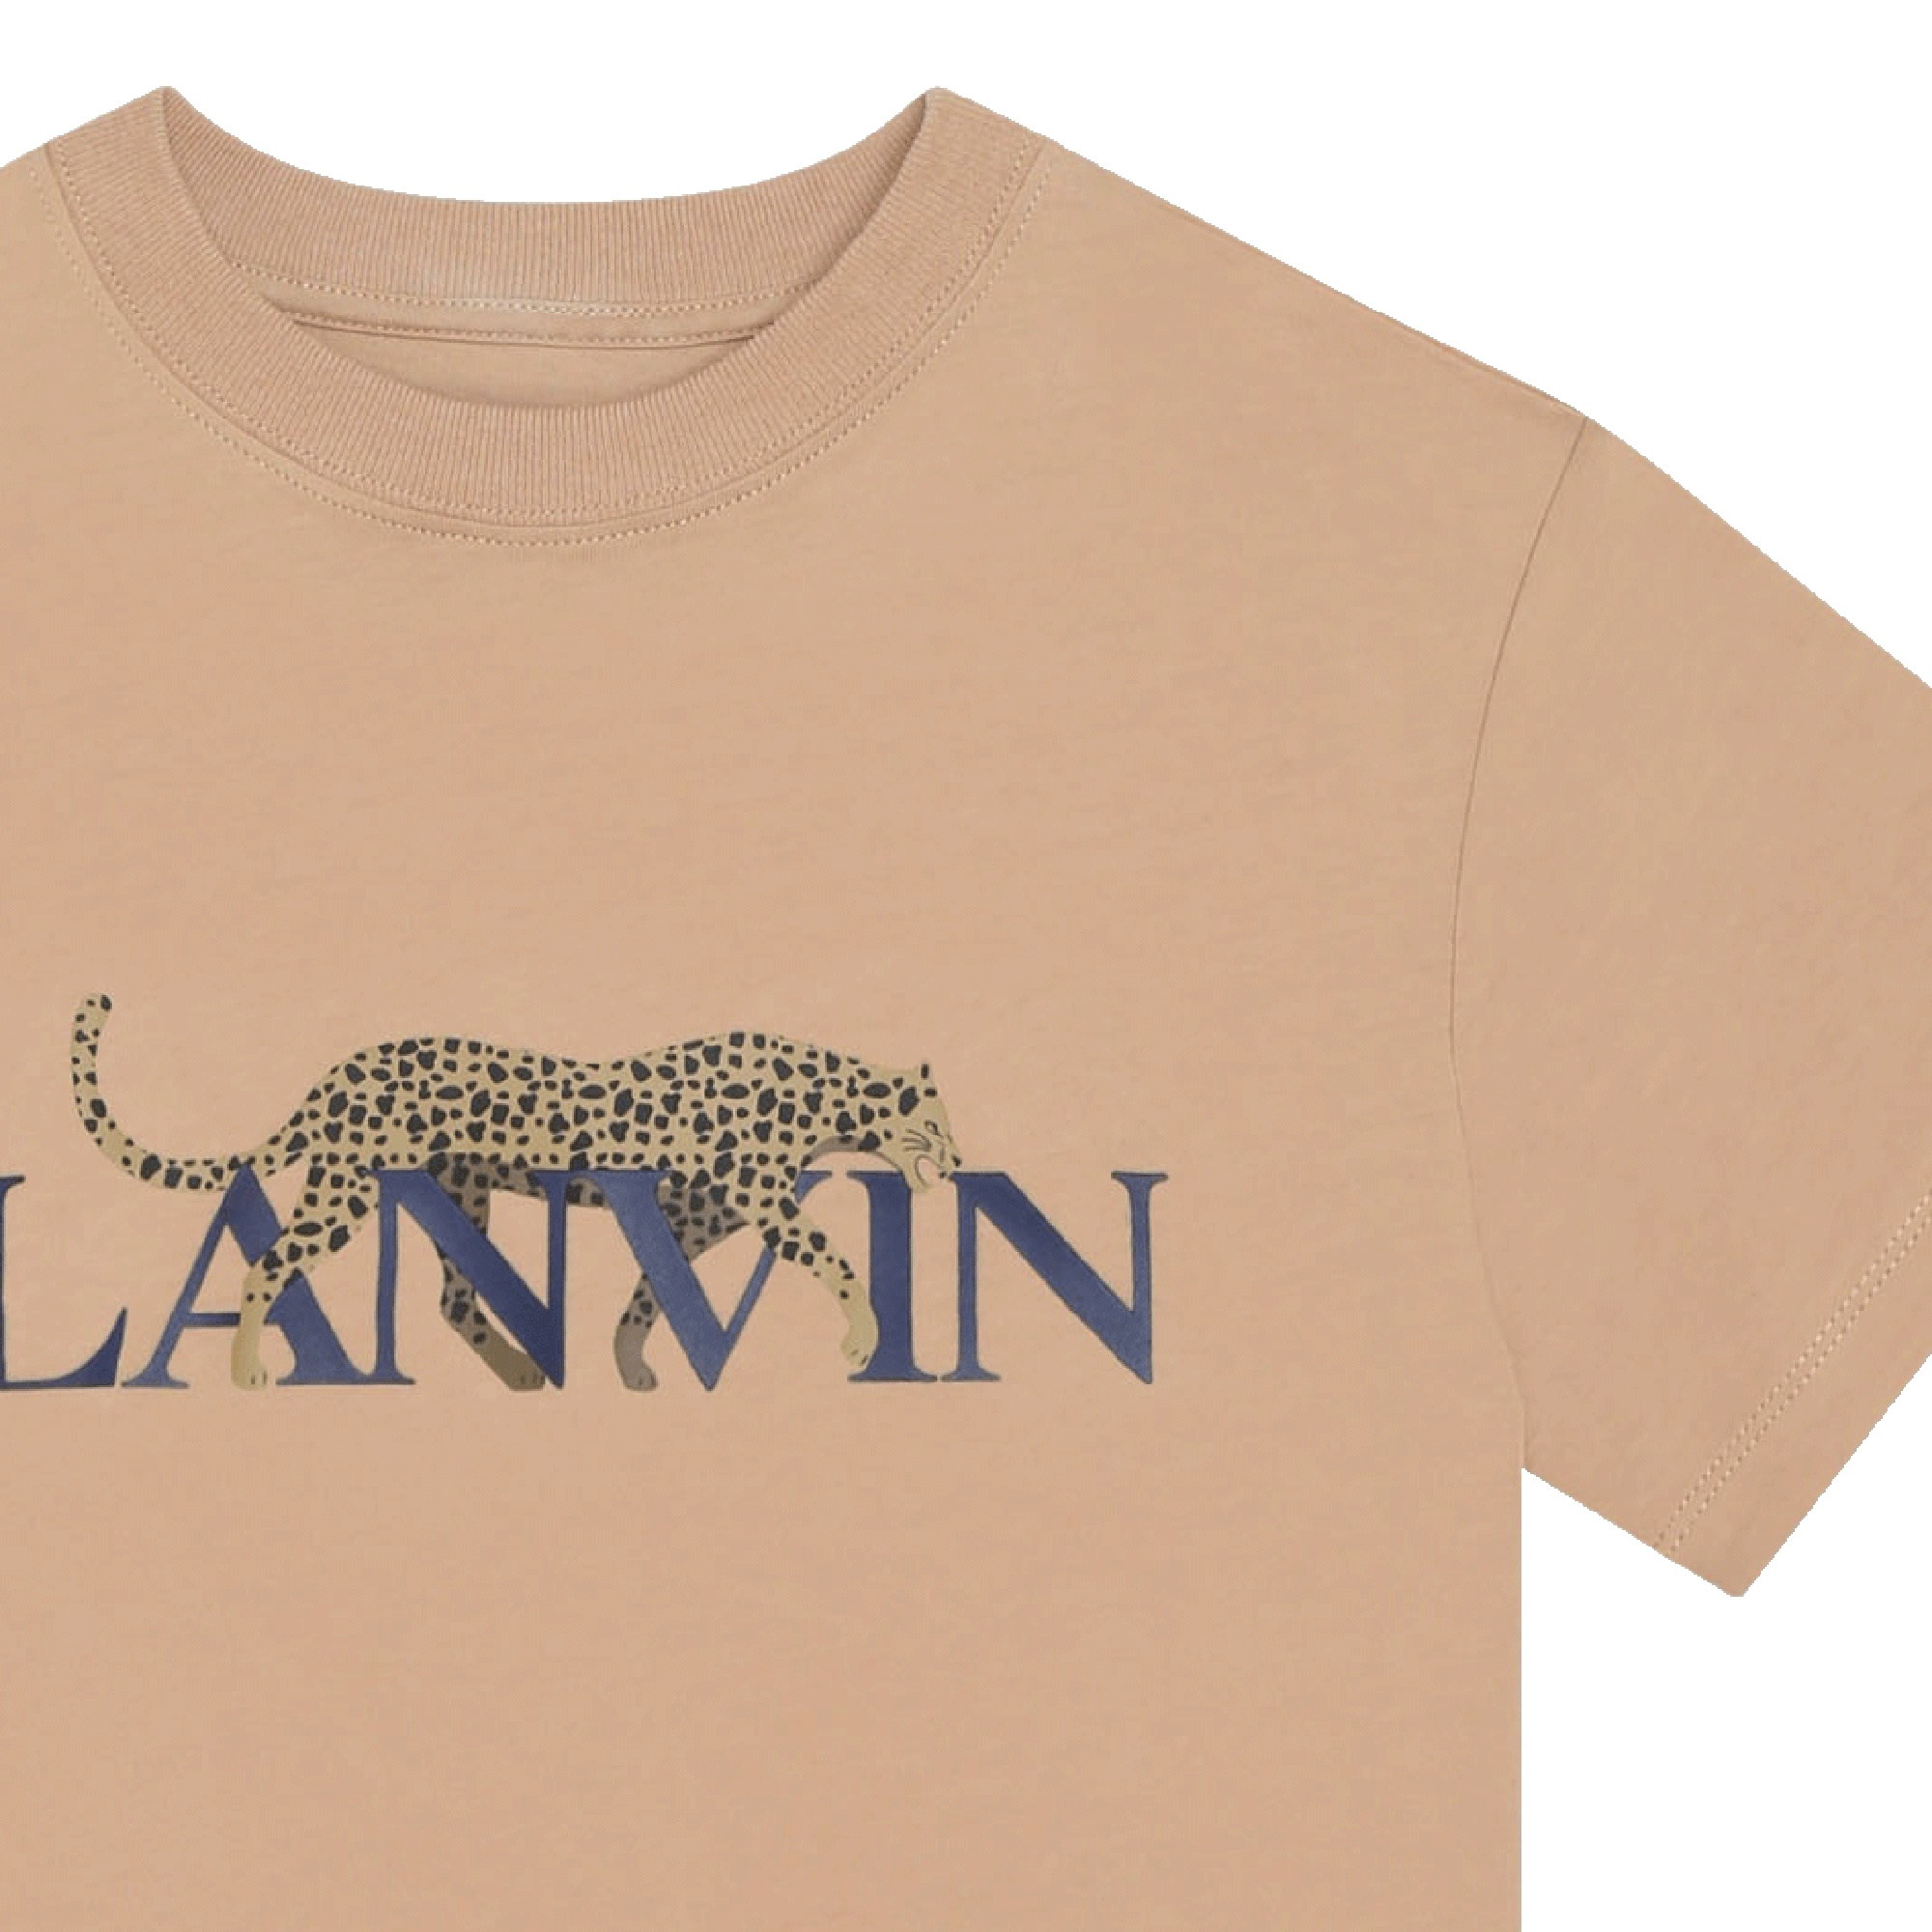 Baumwoll-T-Shirt mit Motiv LANVIN Für JUNGE